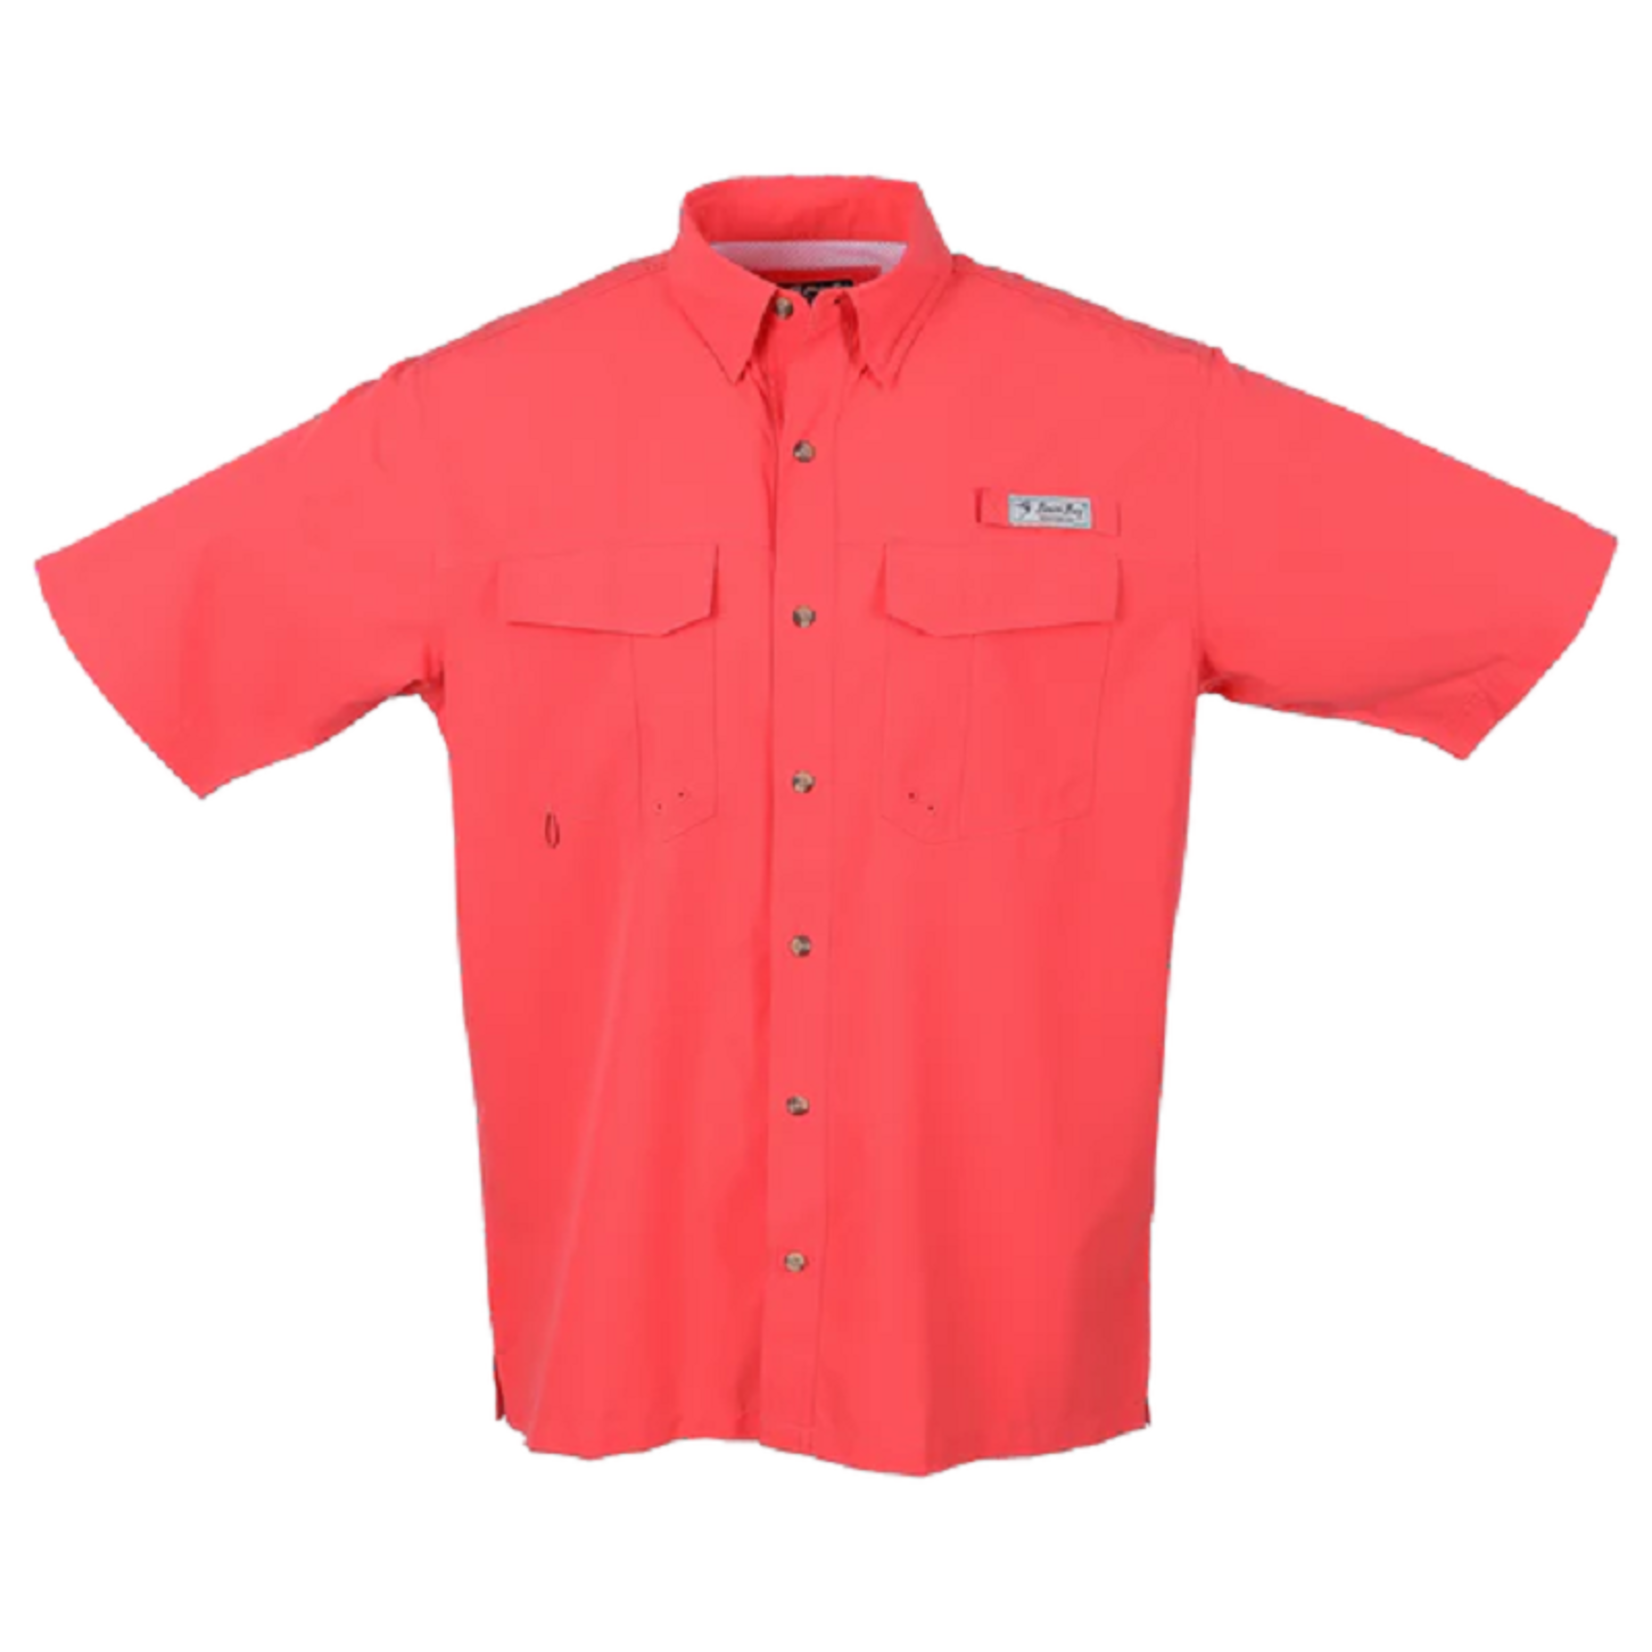 Bimini Bay Outfitters Bimini Flats V Short Sleeve Shirt